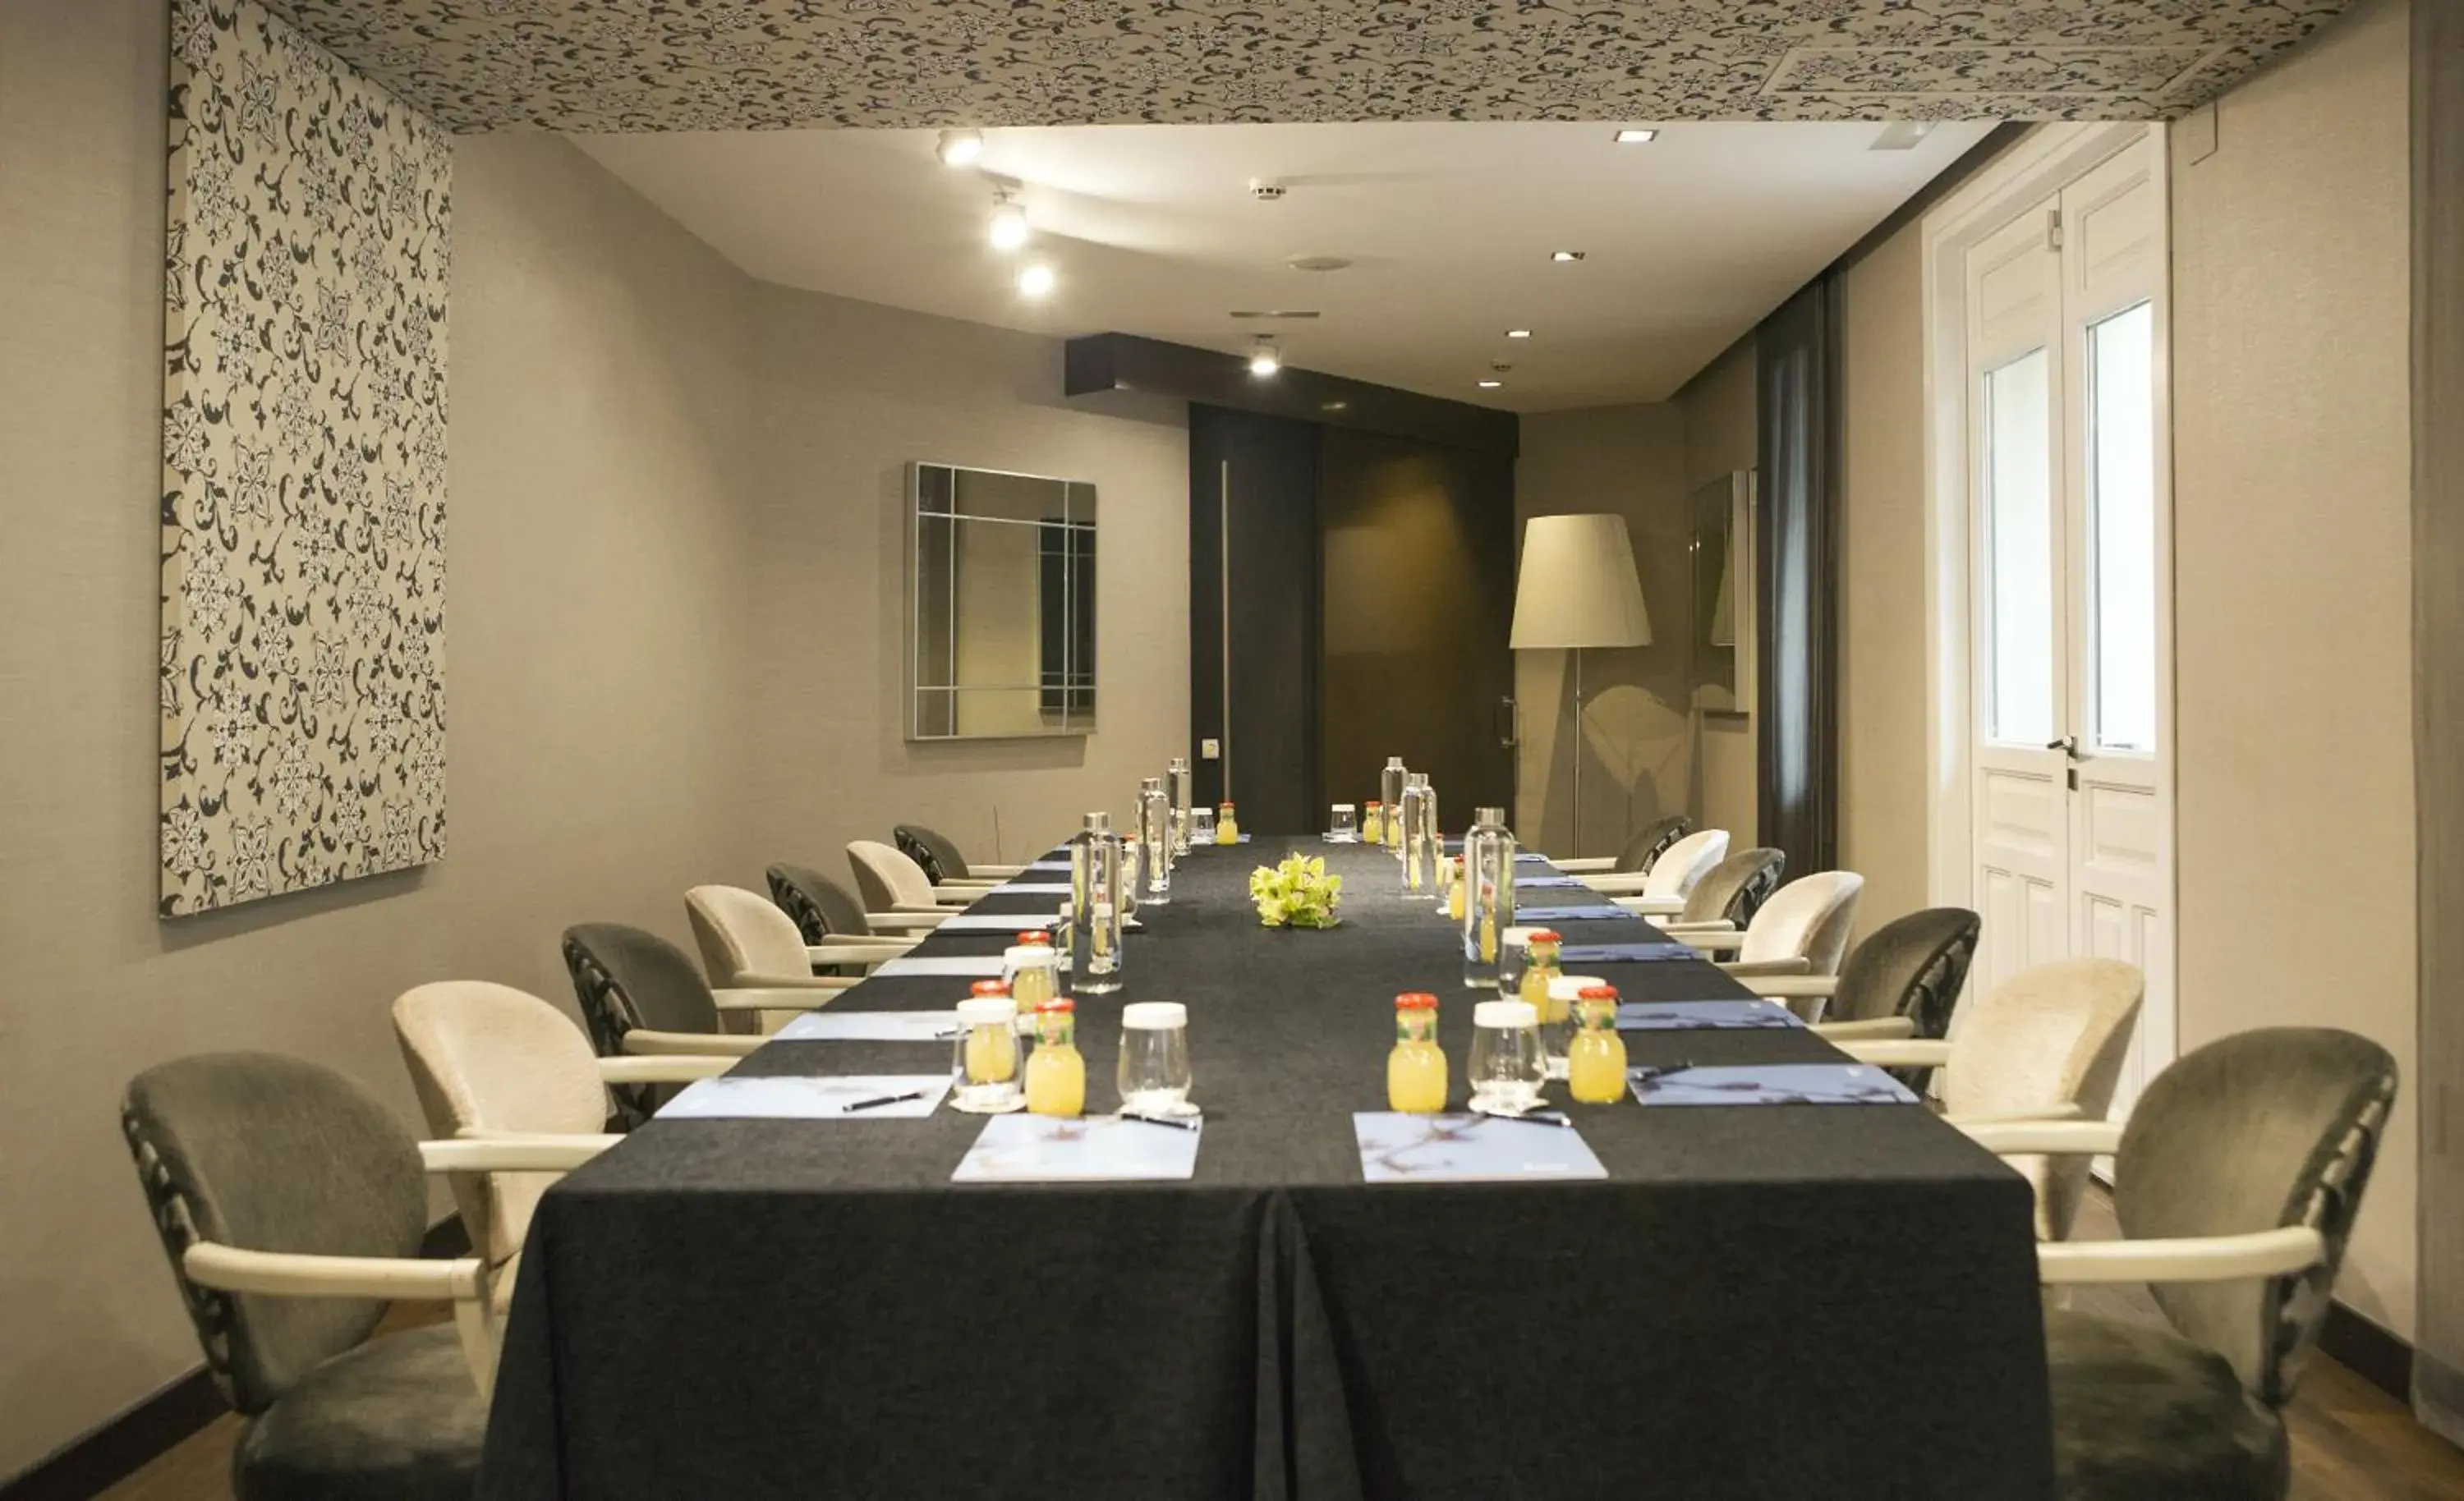 Meeting/conference room in Hospes Puerta de Alcalá